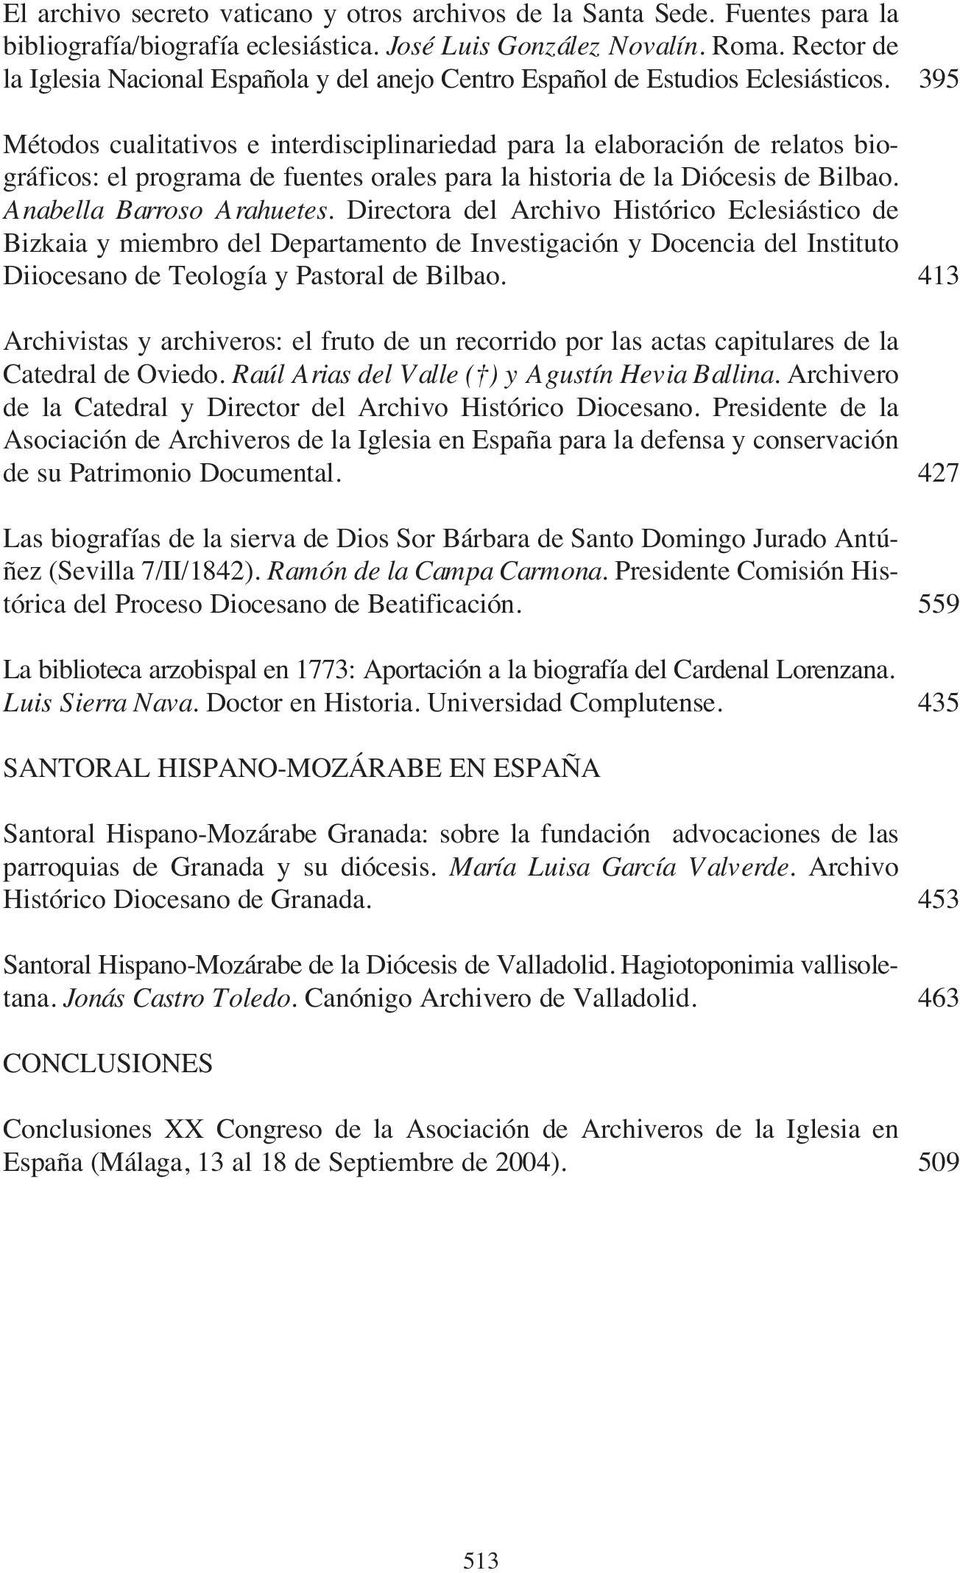 395 Métodos cualitativos e interdisciplinariedad para la elaboración de relatos biográficos: el programa de fuentes orales para la historia de la Diócesis de Bilbao. Anabella Barroso Arahuetes.